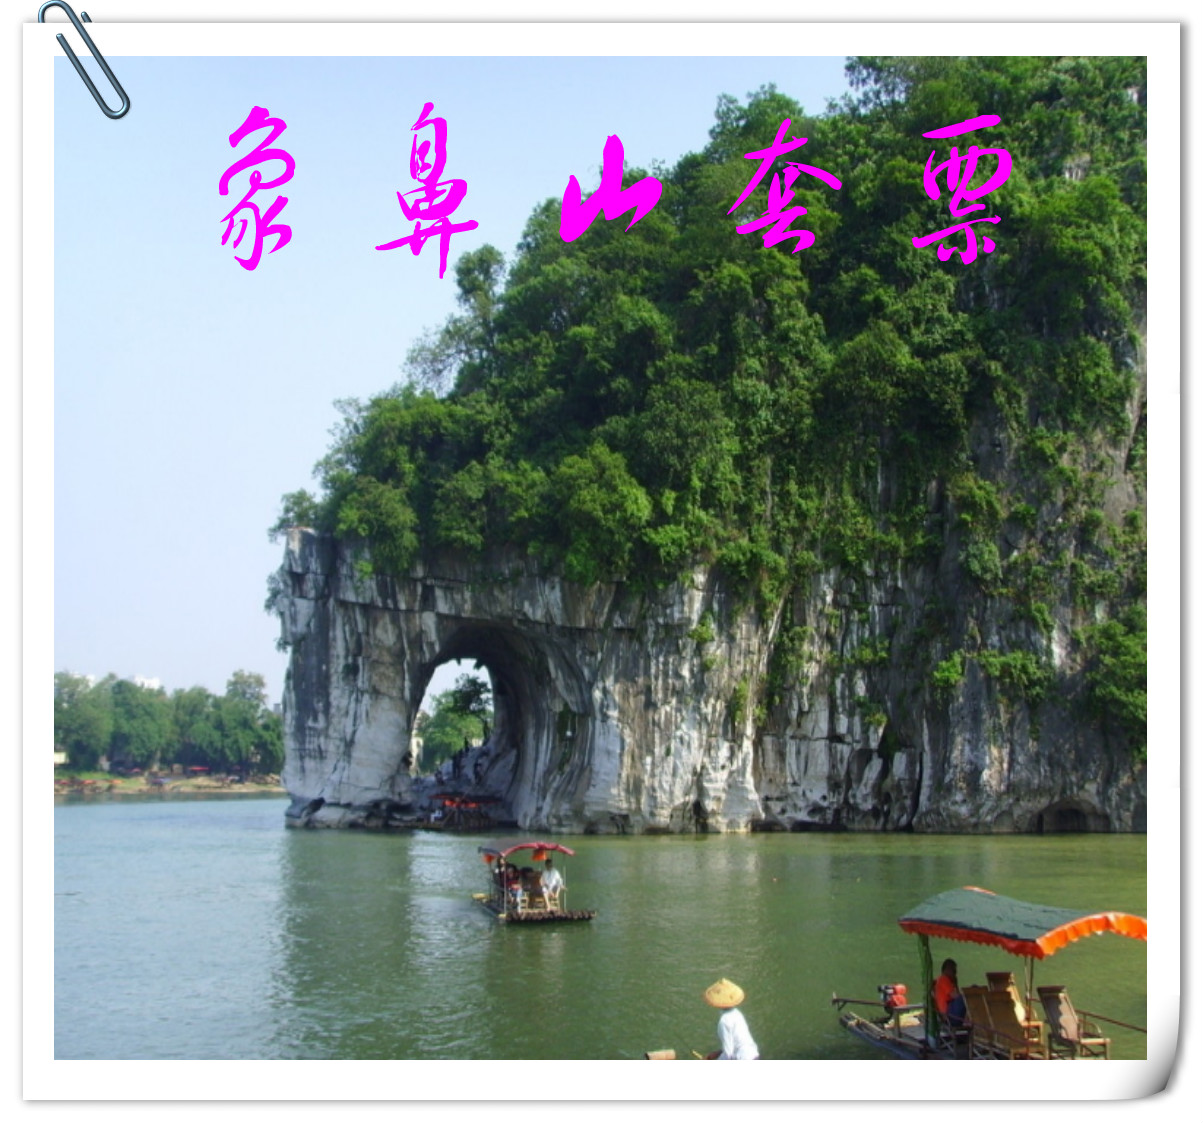 桂林旅游 市区景点套票 象鼻山 芦笛岩 七星公园